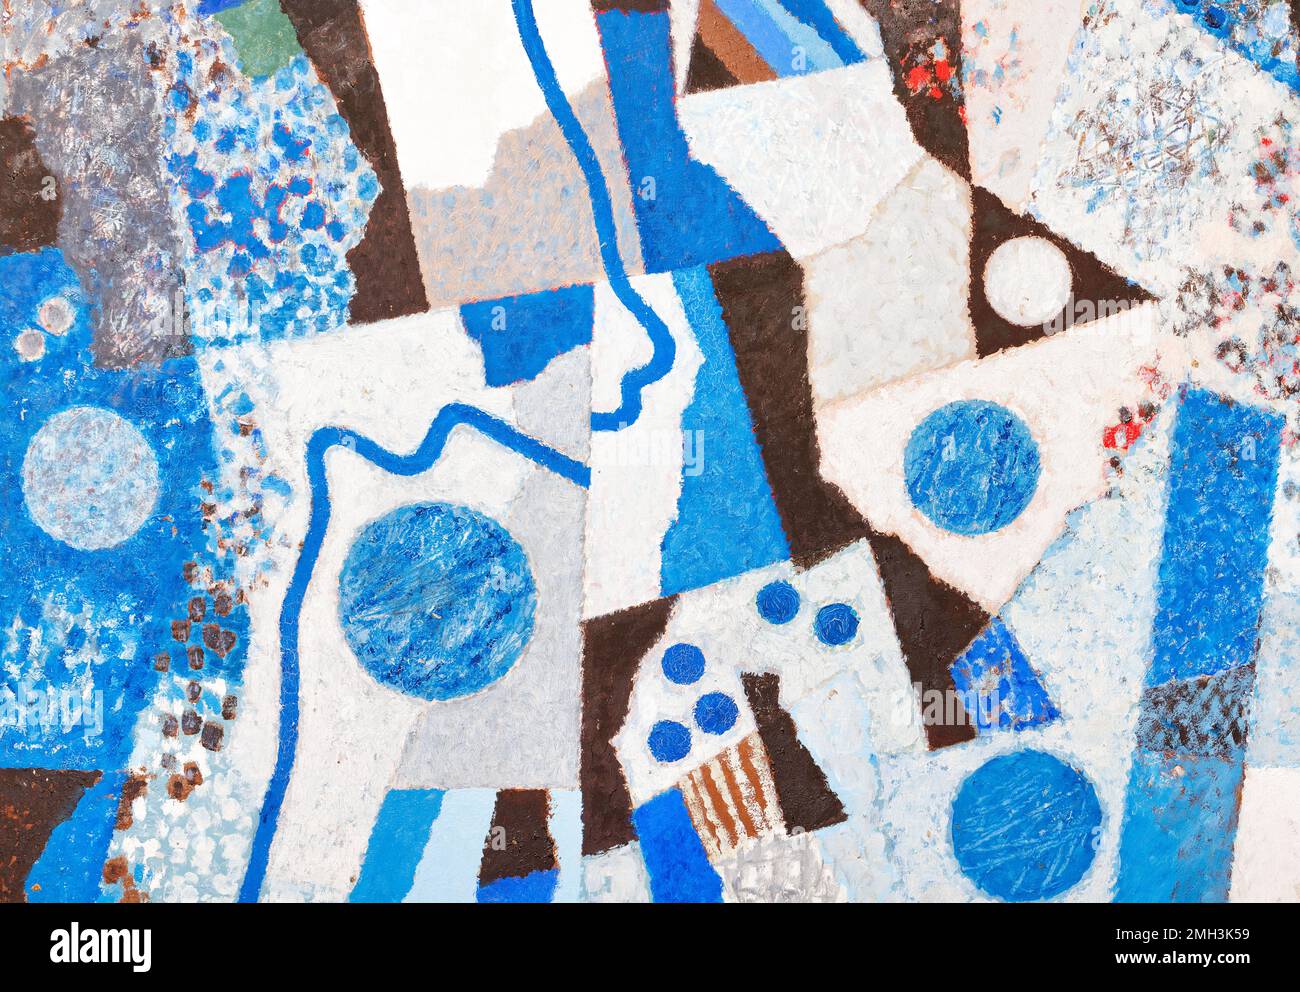 Abstrakte Textur im afrikanischen Stil aus geometrischen Formen von Linien, Dreiecken und Kreisen in Blau, Braun und Weiß. Stockfoto